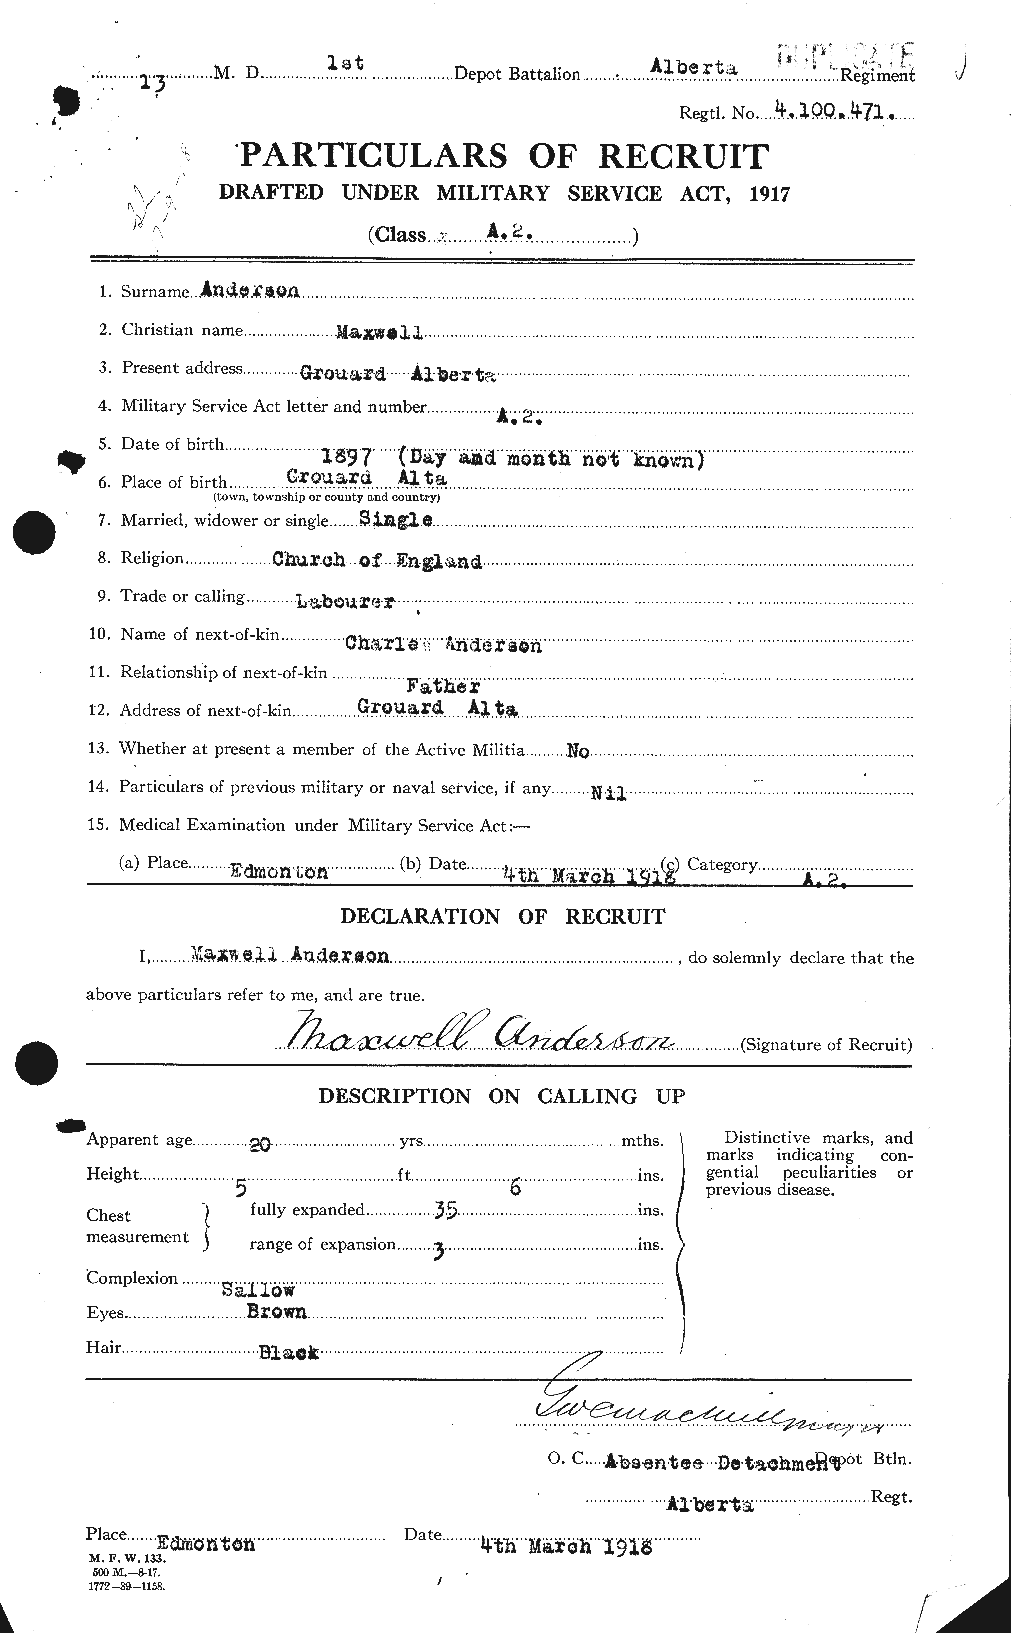 Dossiers du Personnel de la Première Guerre mondiale - CEC 207463a